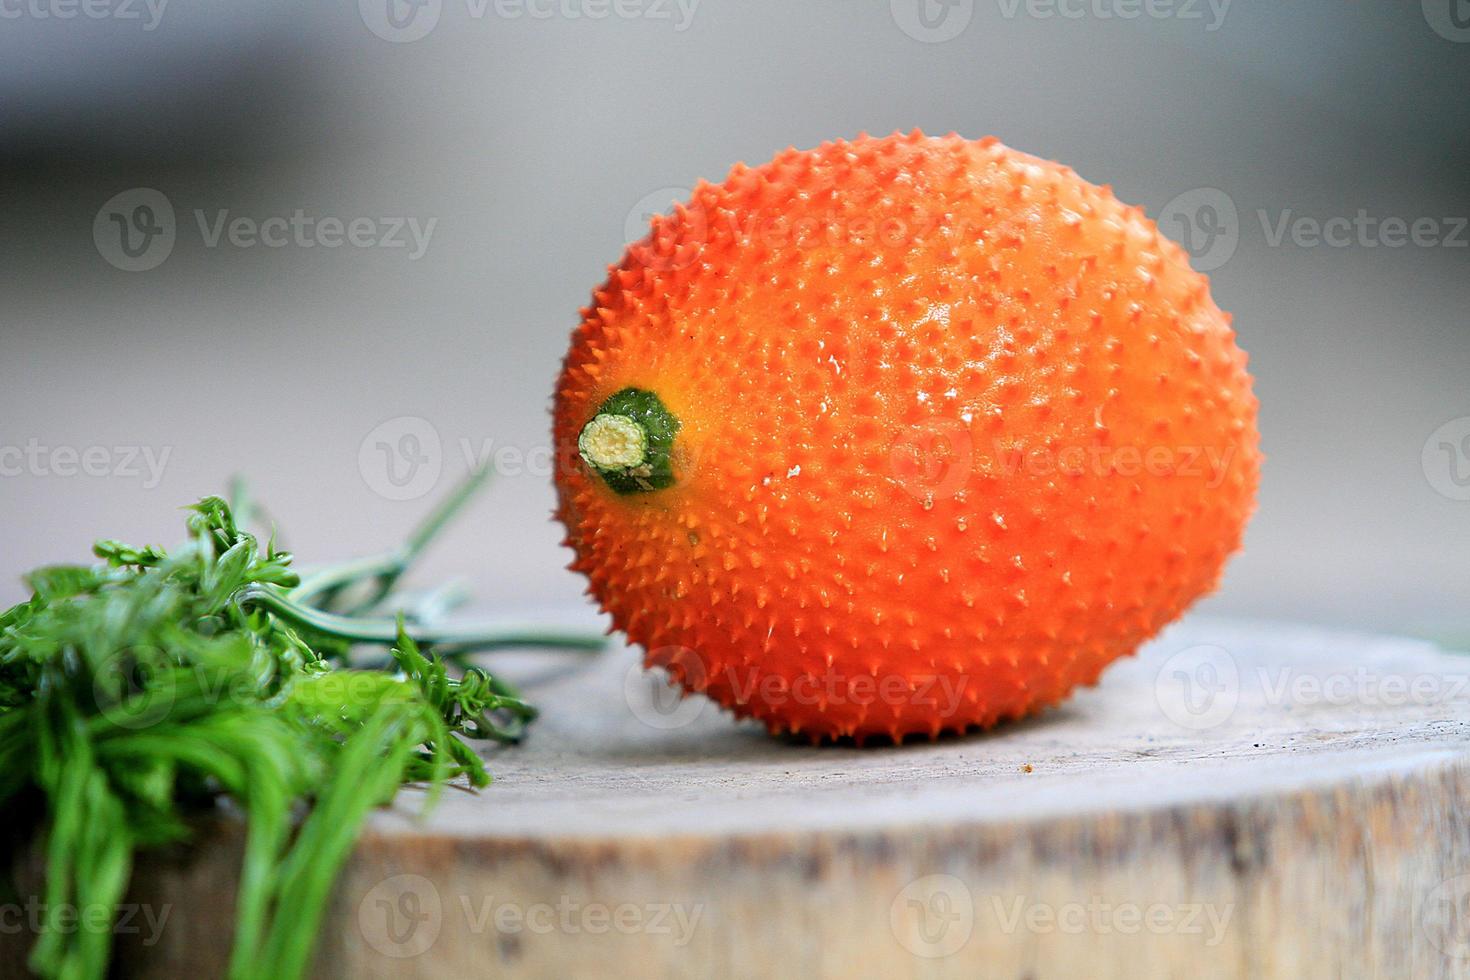 südostasiatische Frucht, allgemein bekannt als Gac, Baby Jackruit foto